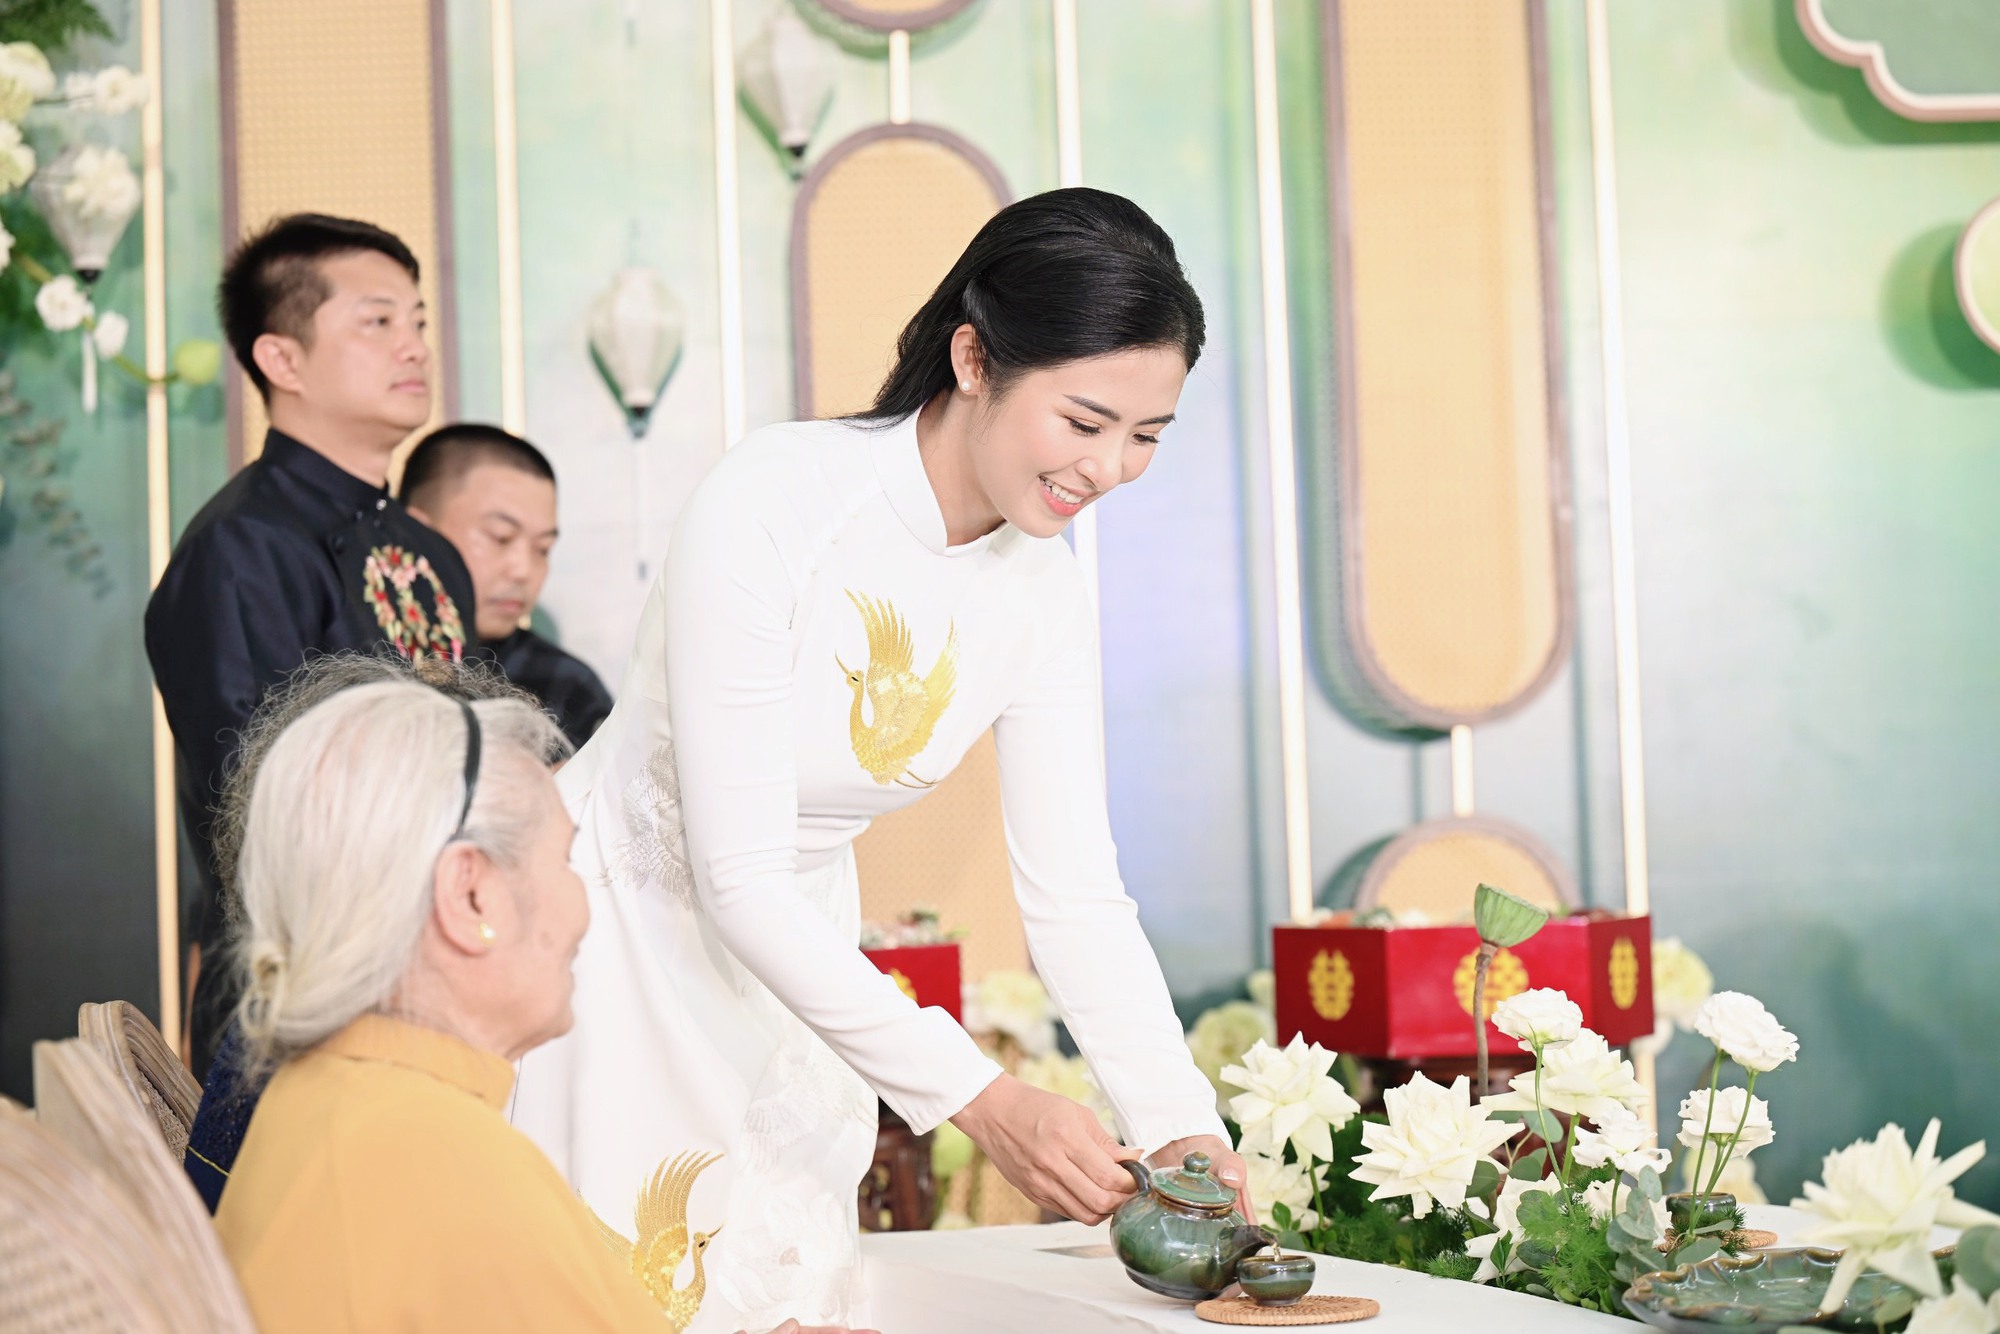 Đỗ Mỹ Linh, Dương Tú Anh cùng dàn Hoa - Á hậu rạng rỡ xuất hiện tại Lễ ăn hỏi Hoa hậu Ngọc Hân - Ảnh 3.